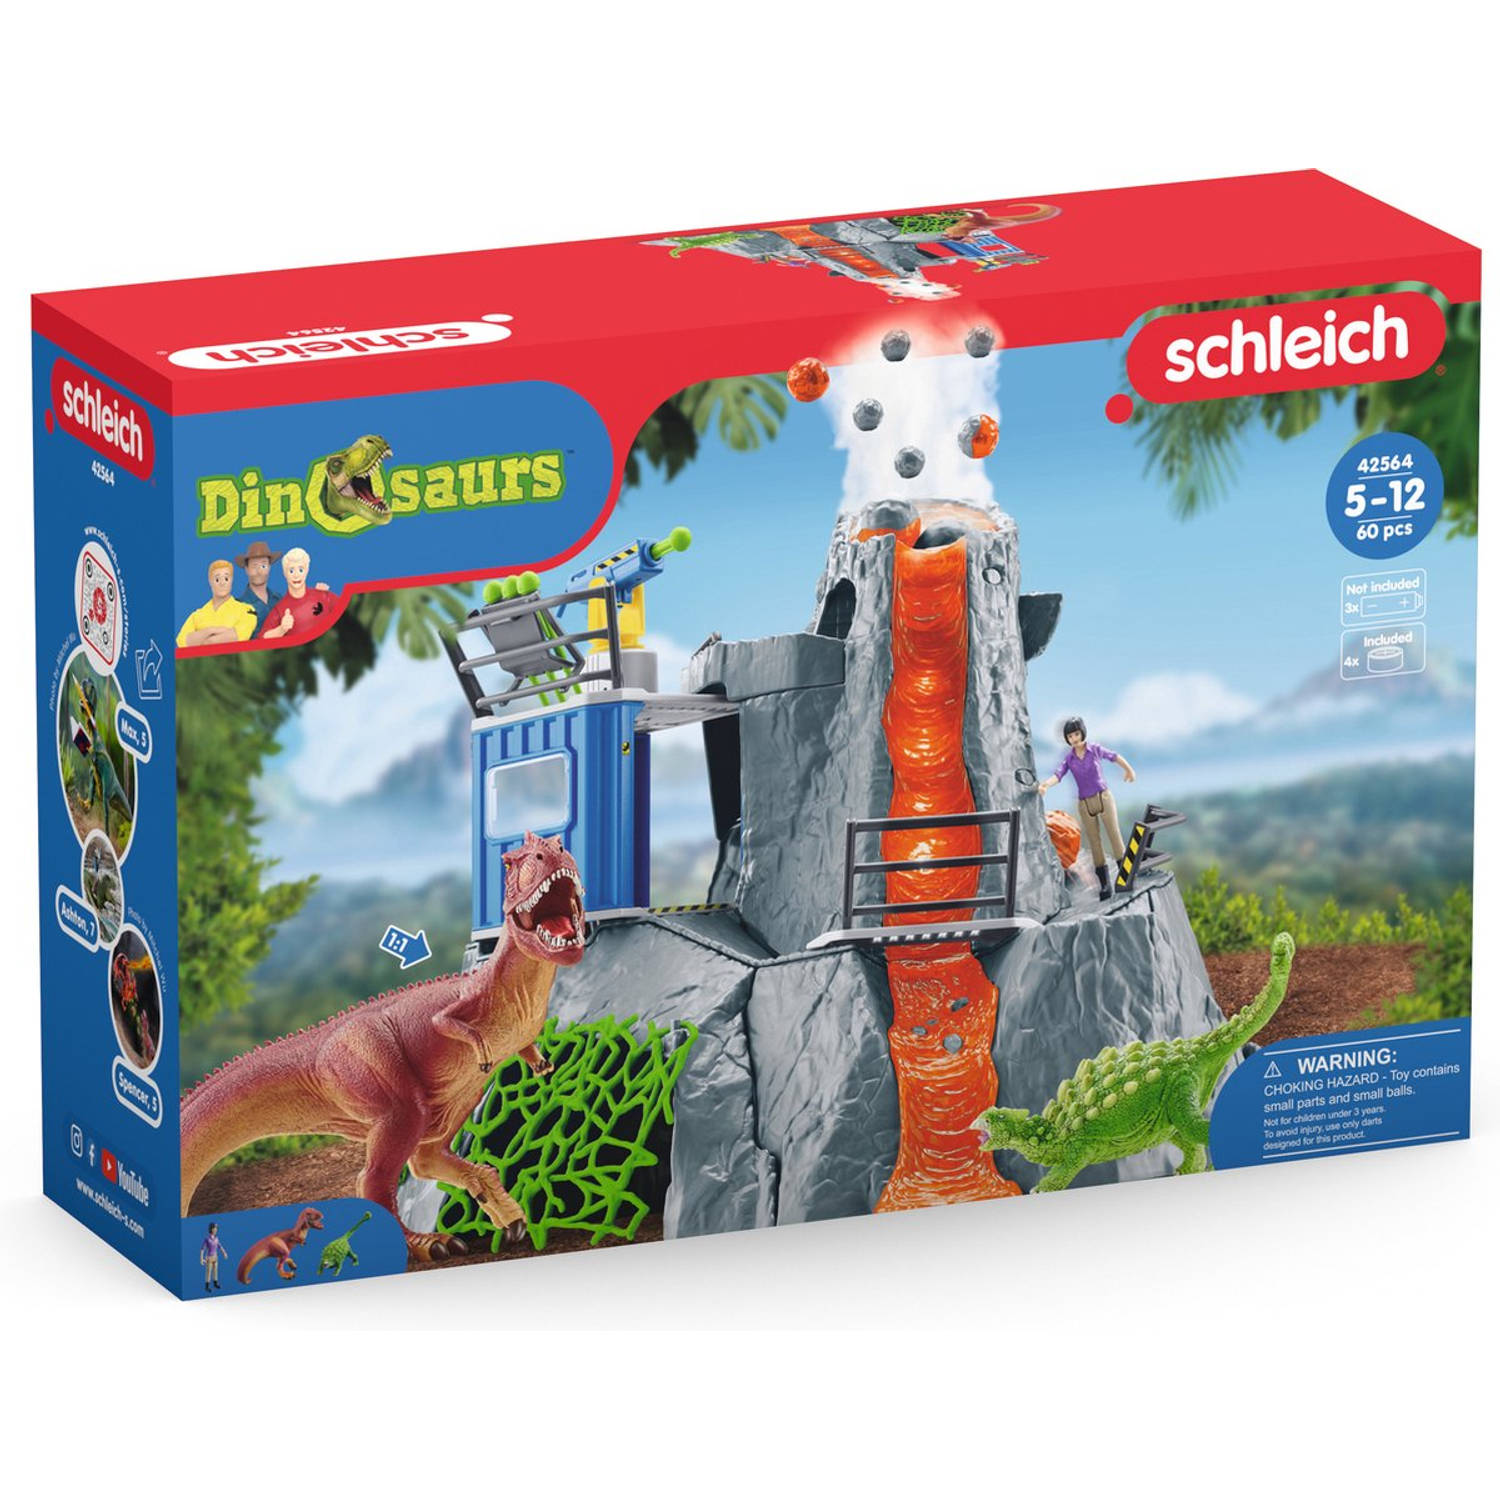 Schleich® Speelwereld Dinosaurs, grote vulcano-expeditie (42564)